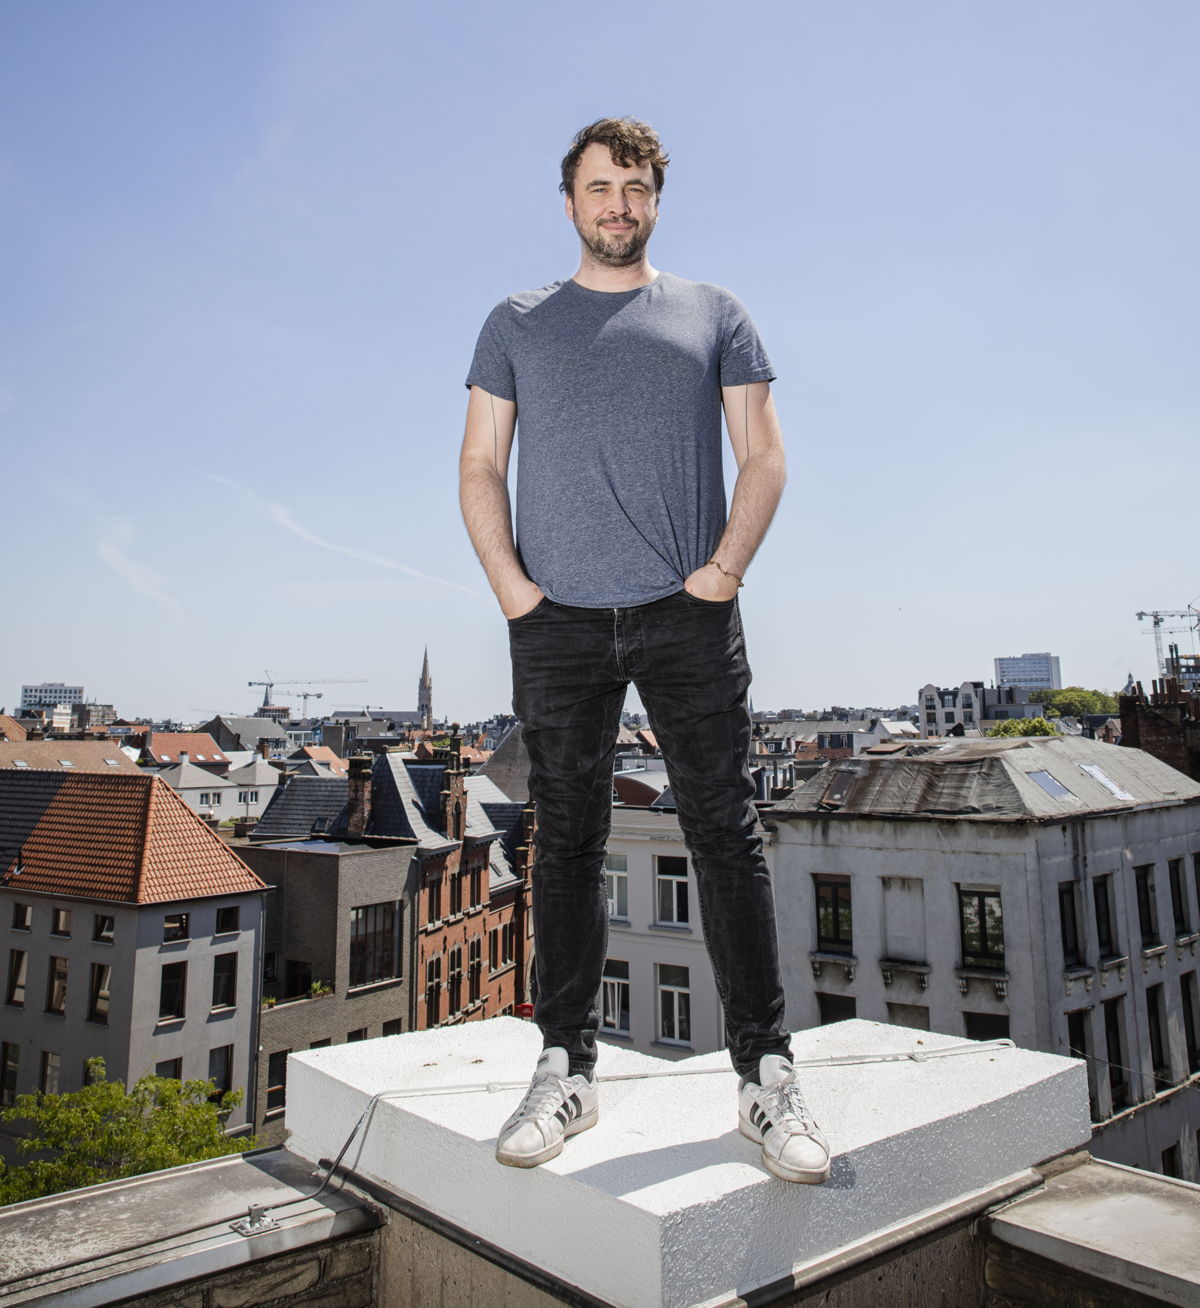 Lode Uytterschaut, CEO and founder 
Start it @KBC (credit Wim Kempenaers)